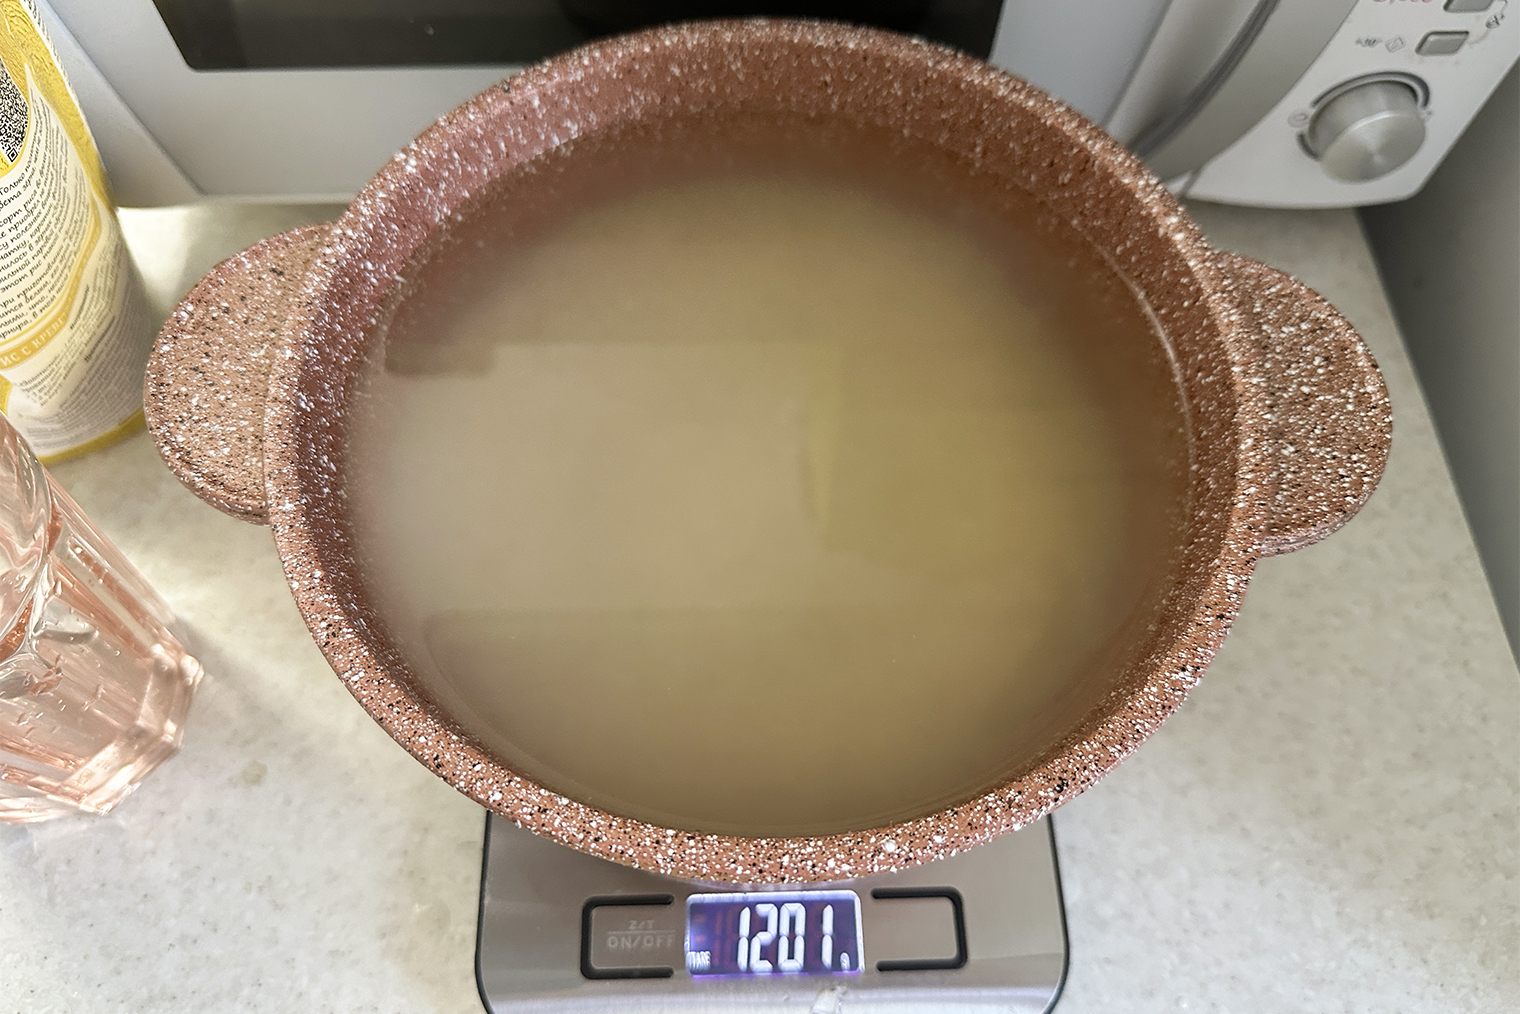 Количество риса и воды проверяла на кухонных весах